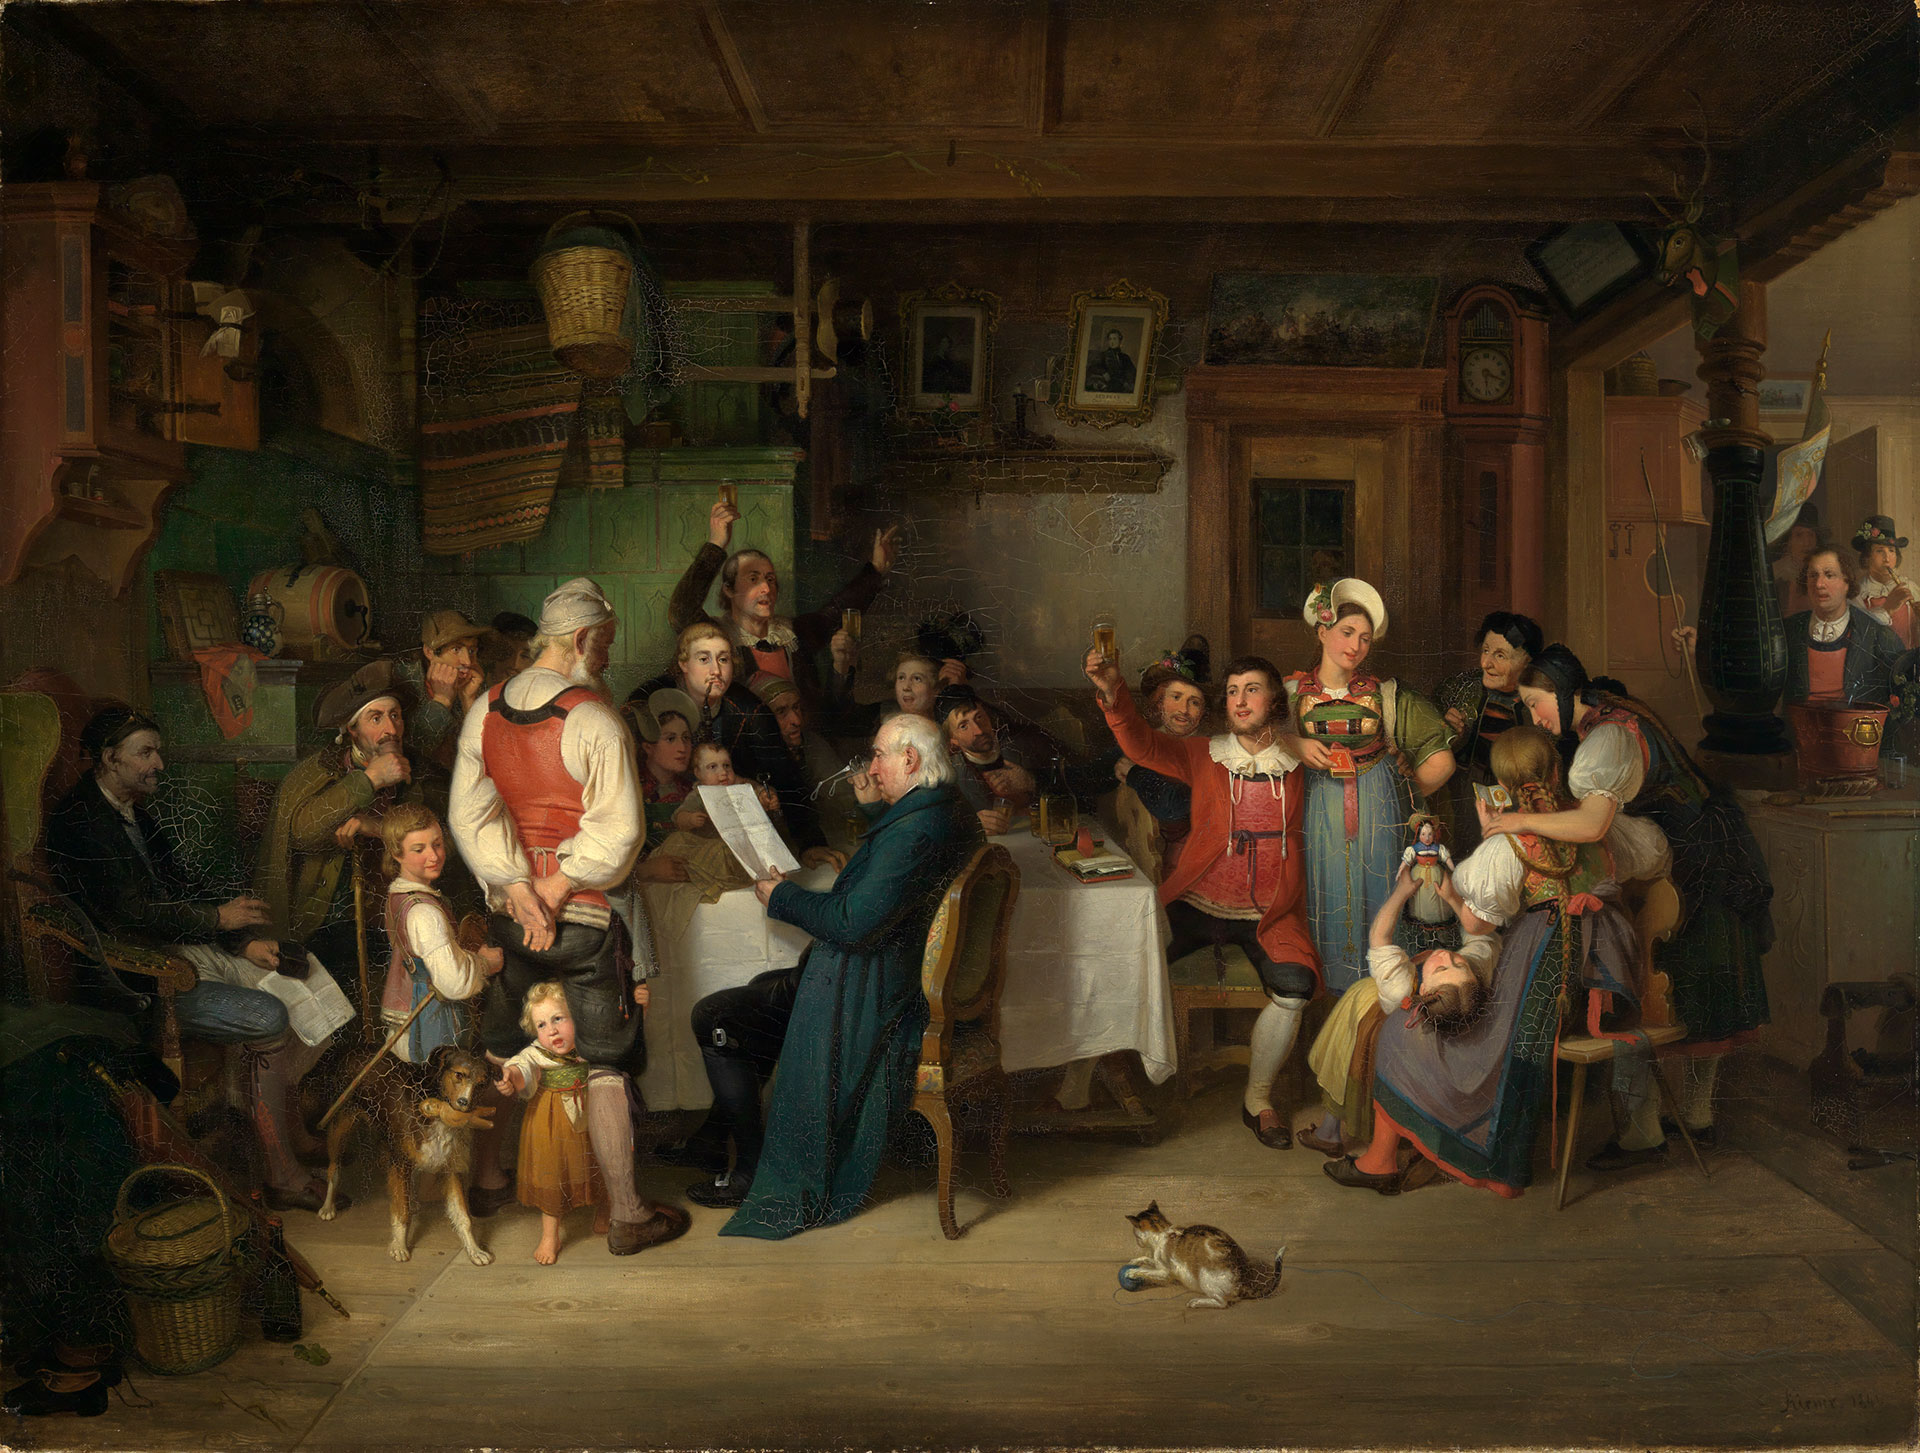 Abbildung des Werks "Die Preisverleihung des landwirtschaftlichen Vereins in einer Hotzenwälder Bauernstube" von Johann Baptist Kirner, entstanden 1841. Zu sehen ist eine Bauernstube mit einer Gruppe Menschen die sich um einen Tisch versammelt haben. 